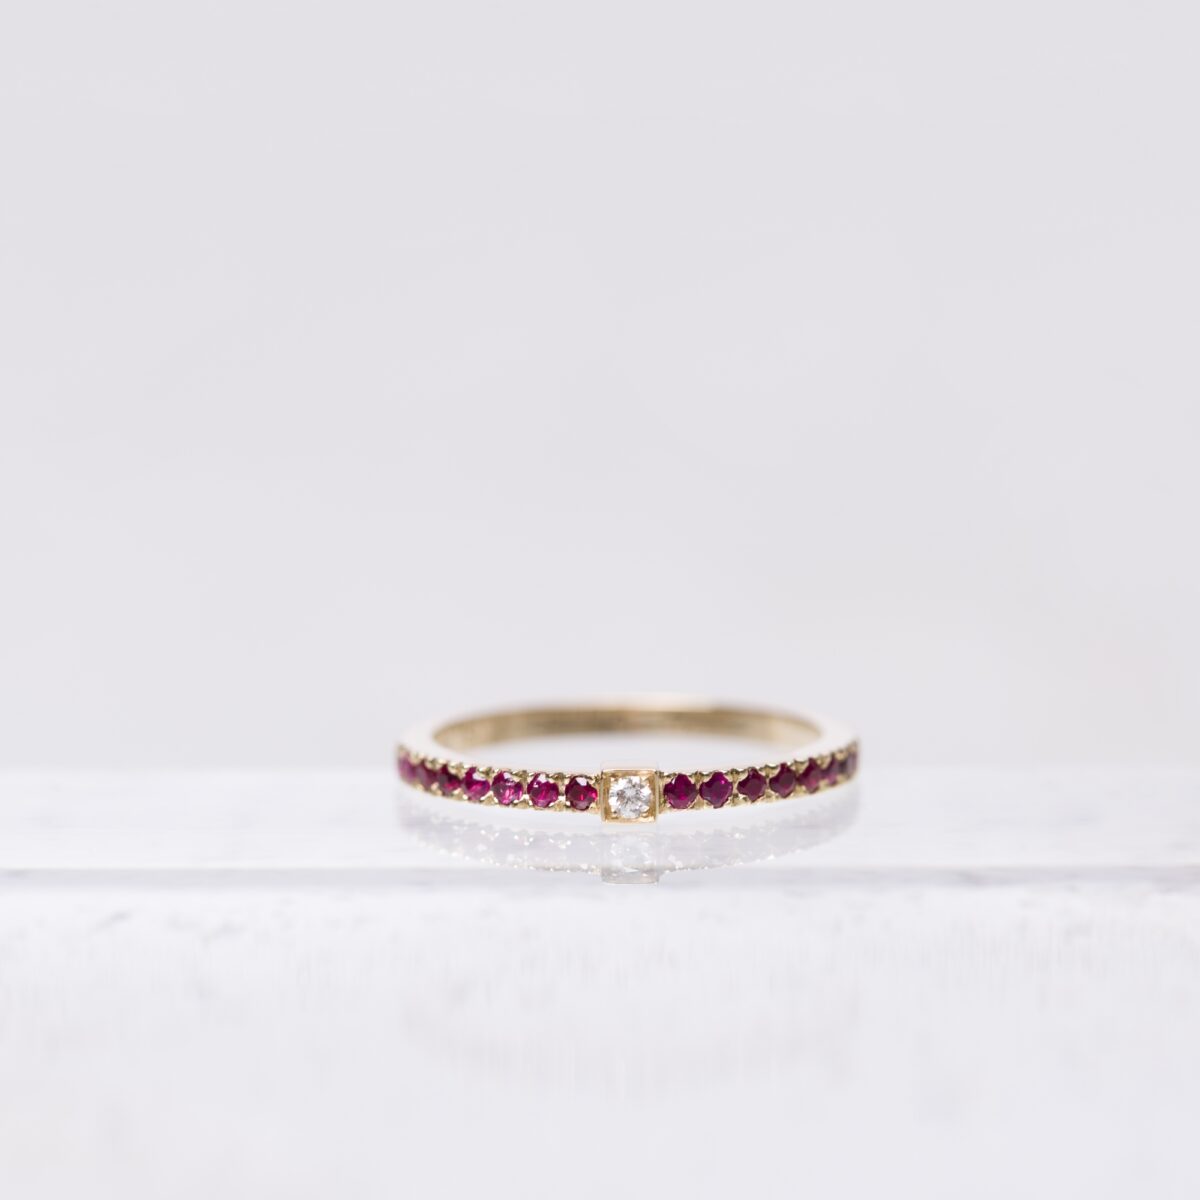 anneau serti en or rose 18 carats avec des rubis et une barrette en or rose avec un diamant